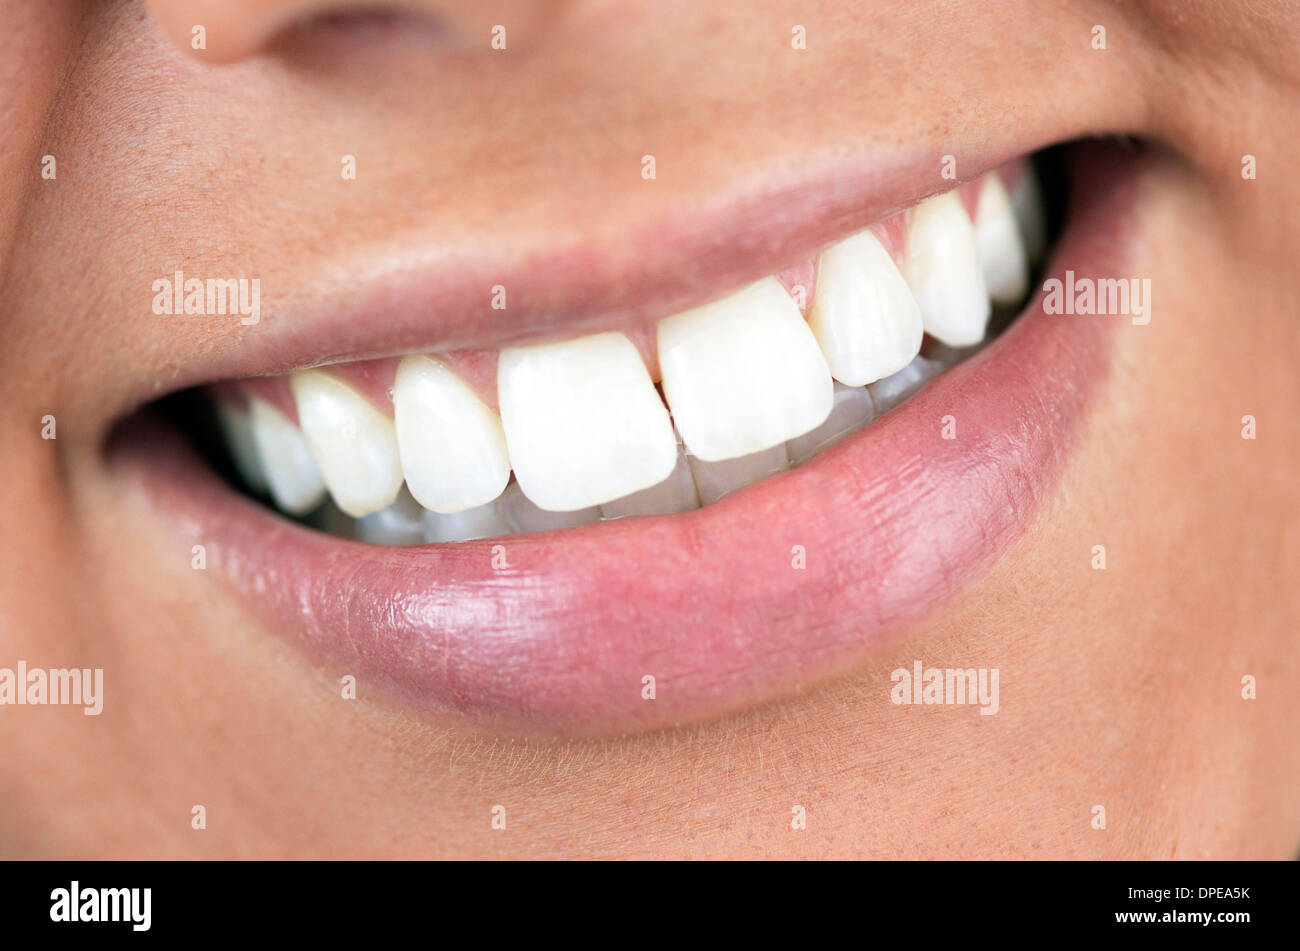 Un bel close-up sorriso di una donna che i denti sono perfetti. Foto Stock